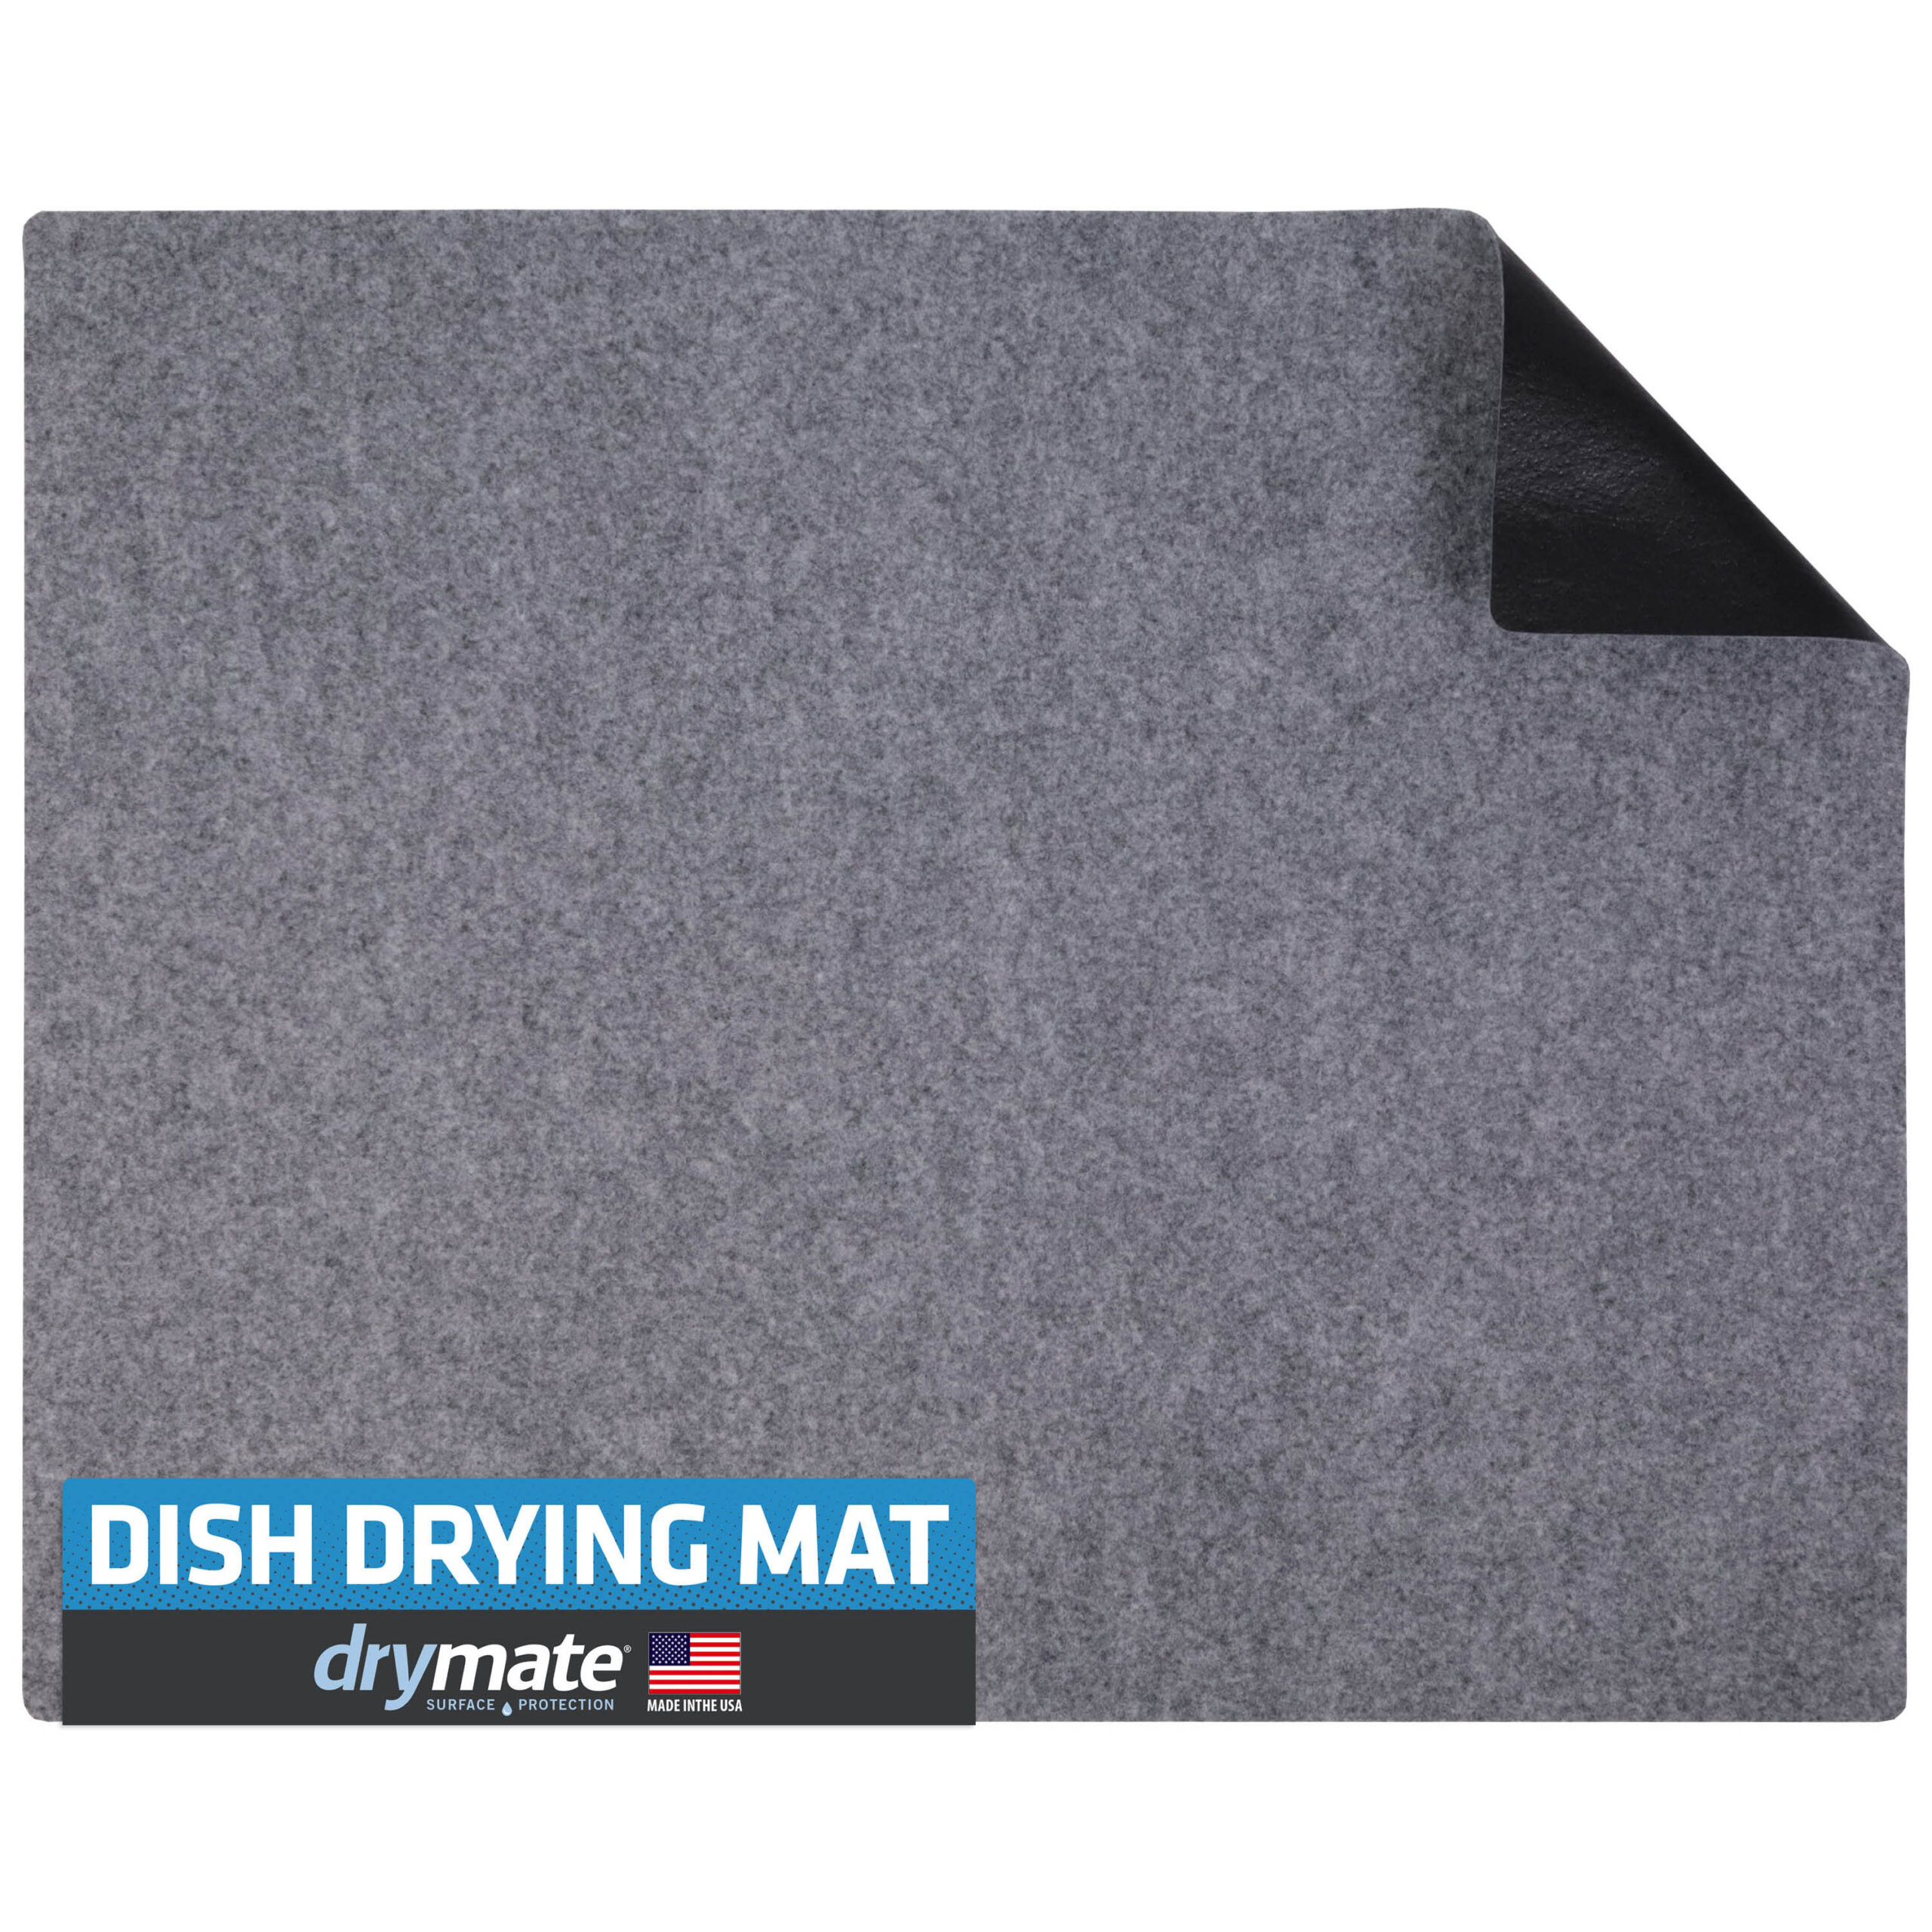 Saltwater Dish Drying Mat